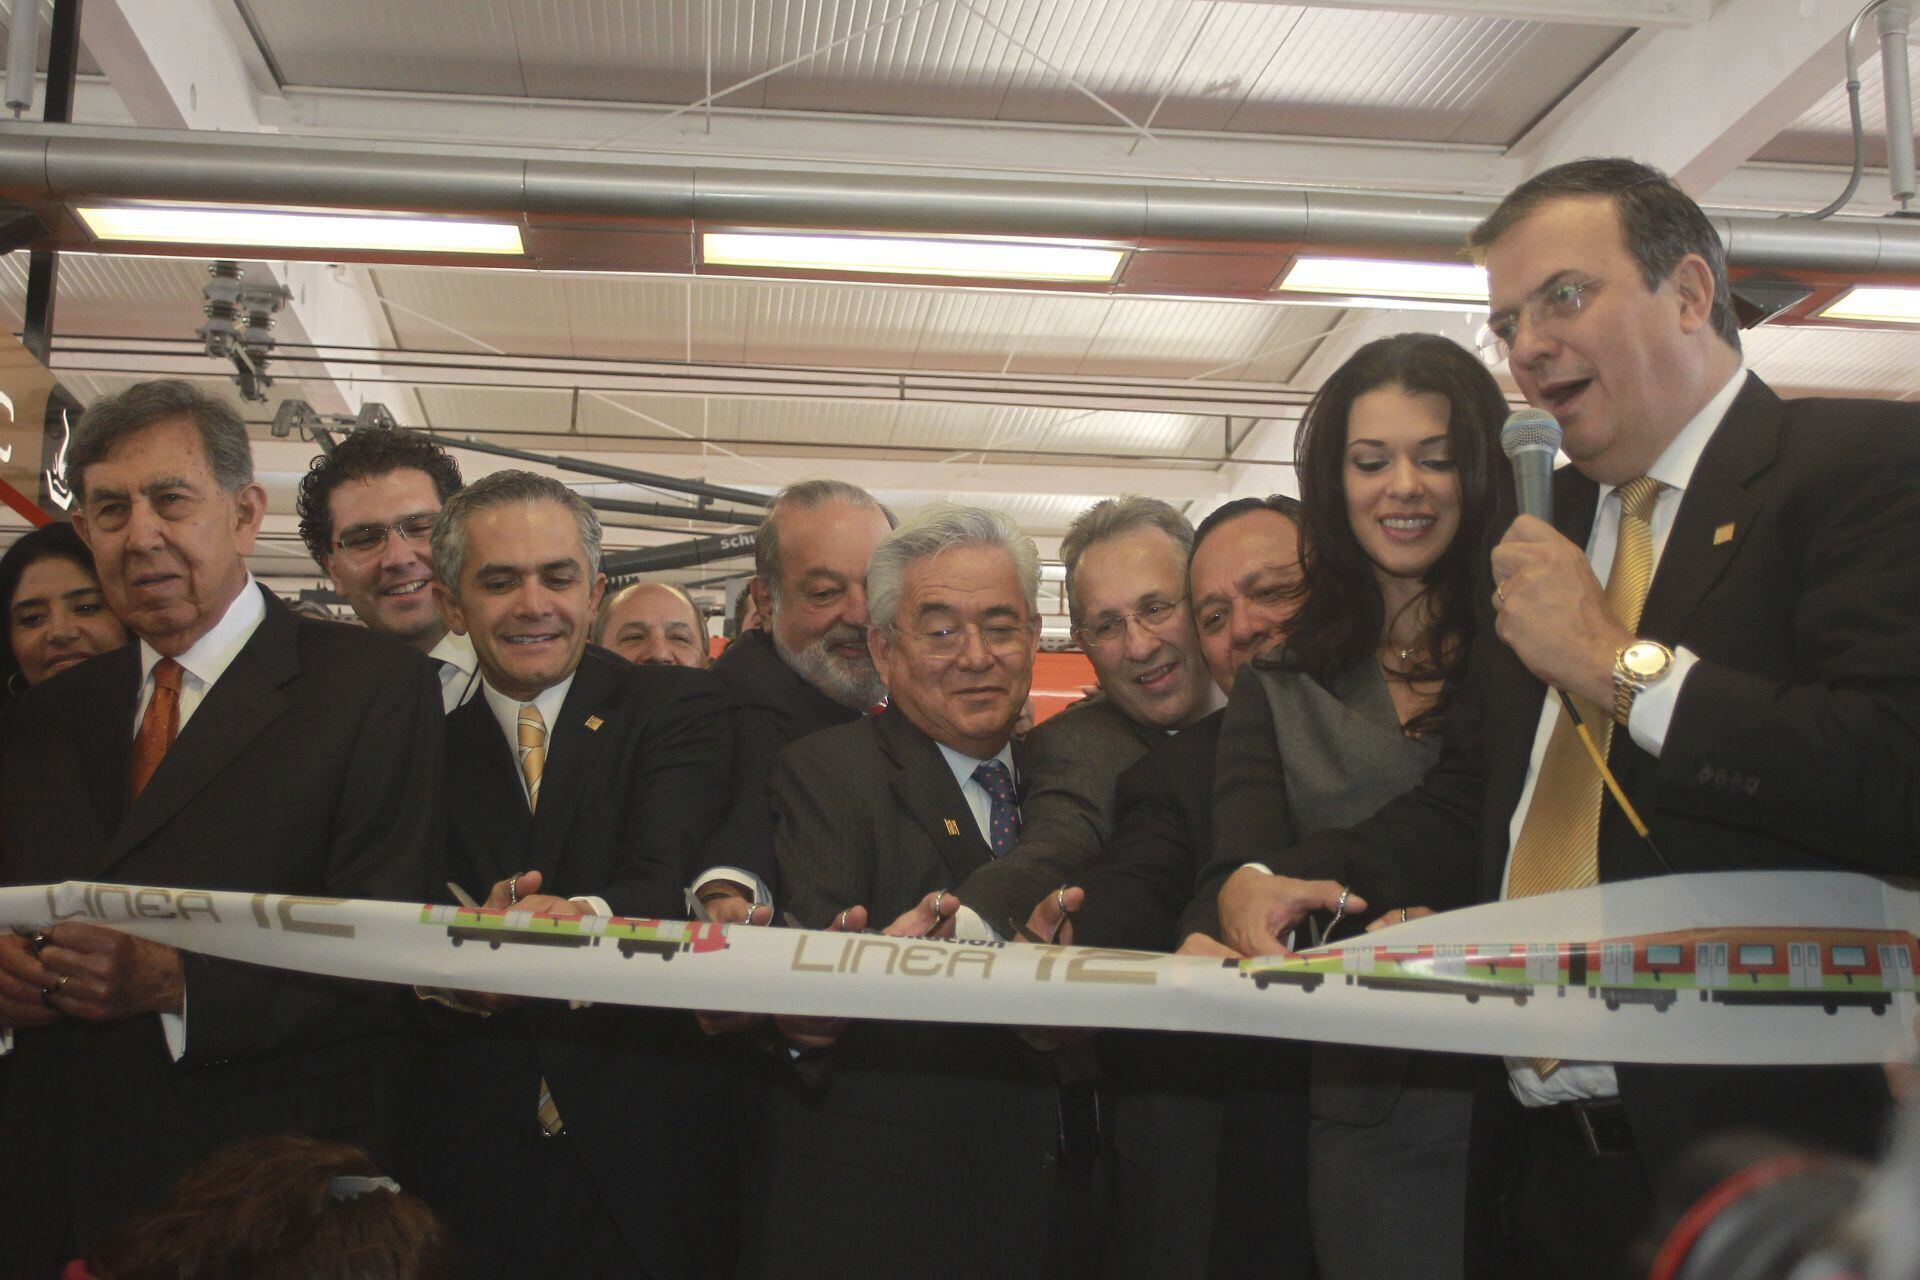 El corte del listón inaugural de la Línea 12 del Metro de Ciudad de México, en octubre de 2012.